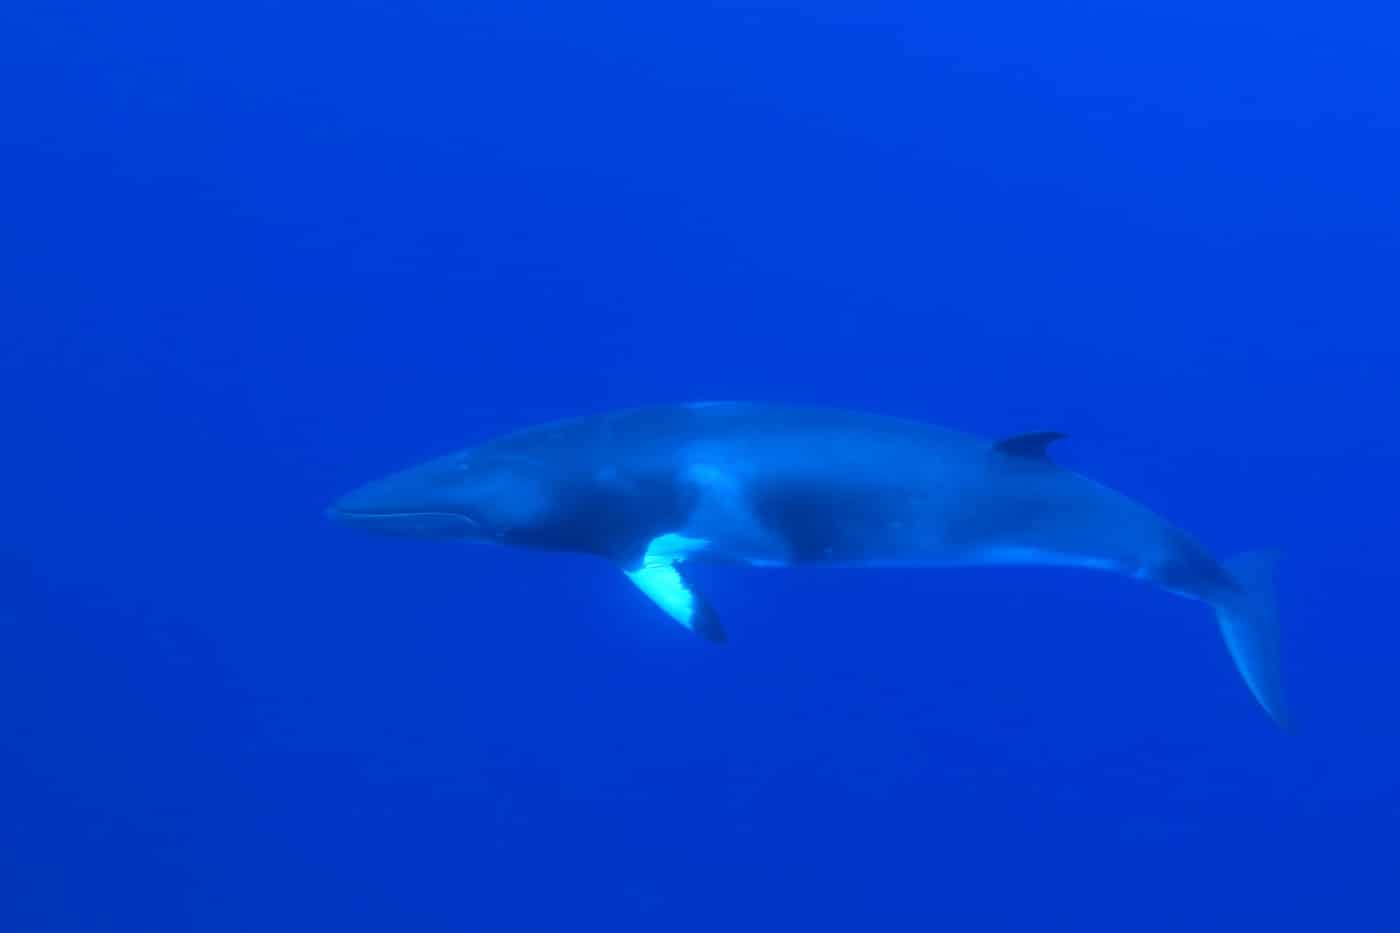 Dwarf Minke Whale (Balaenoptera acutorostrata) underwater. Photo by aquapix